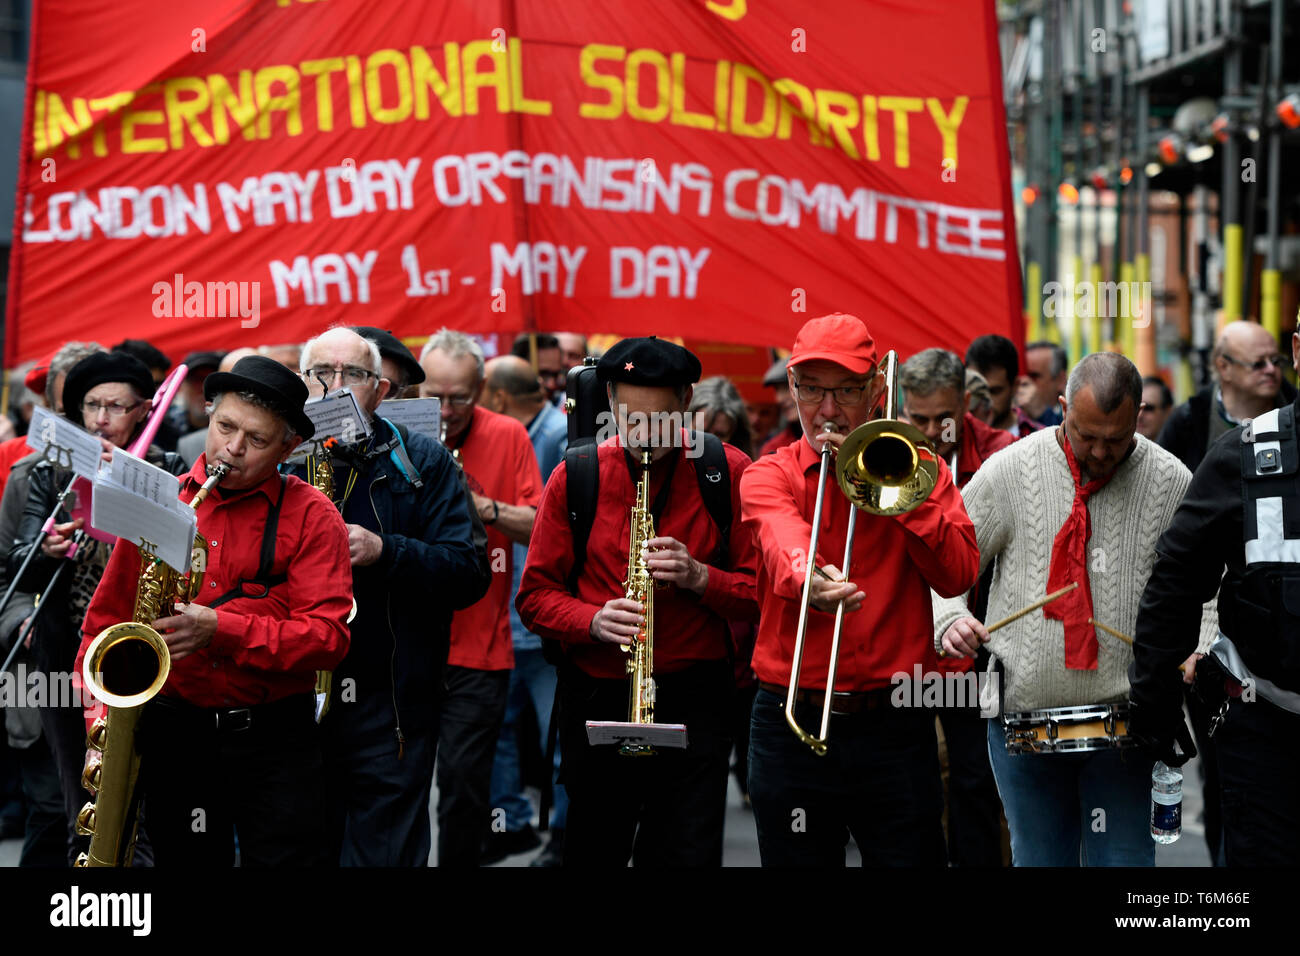 Musiker gesehen, während sie während der Rallye marschieren. Die Demonstranten marschierten durch die Londoner Innenstadt zu einer Kundgebung auf dem Trafalgar Square anspruchsvolle Besseres Gehalt und die Rechte der Arbeitnehmer am 1. Mai. Stockfoto